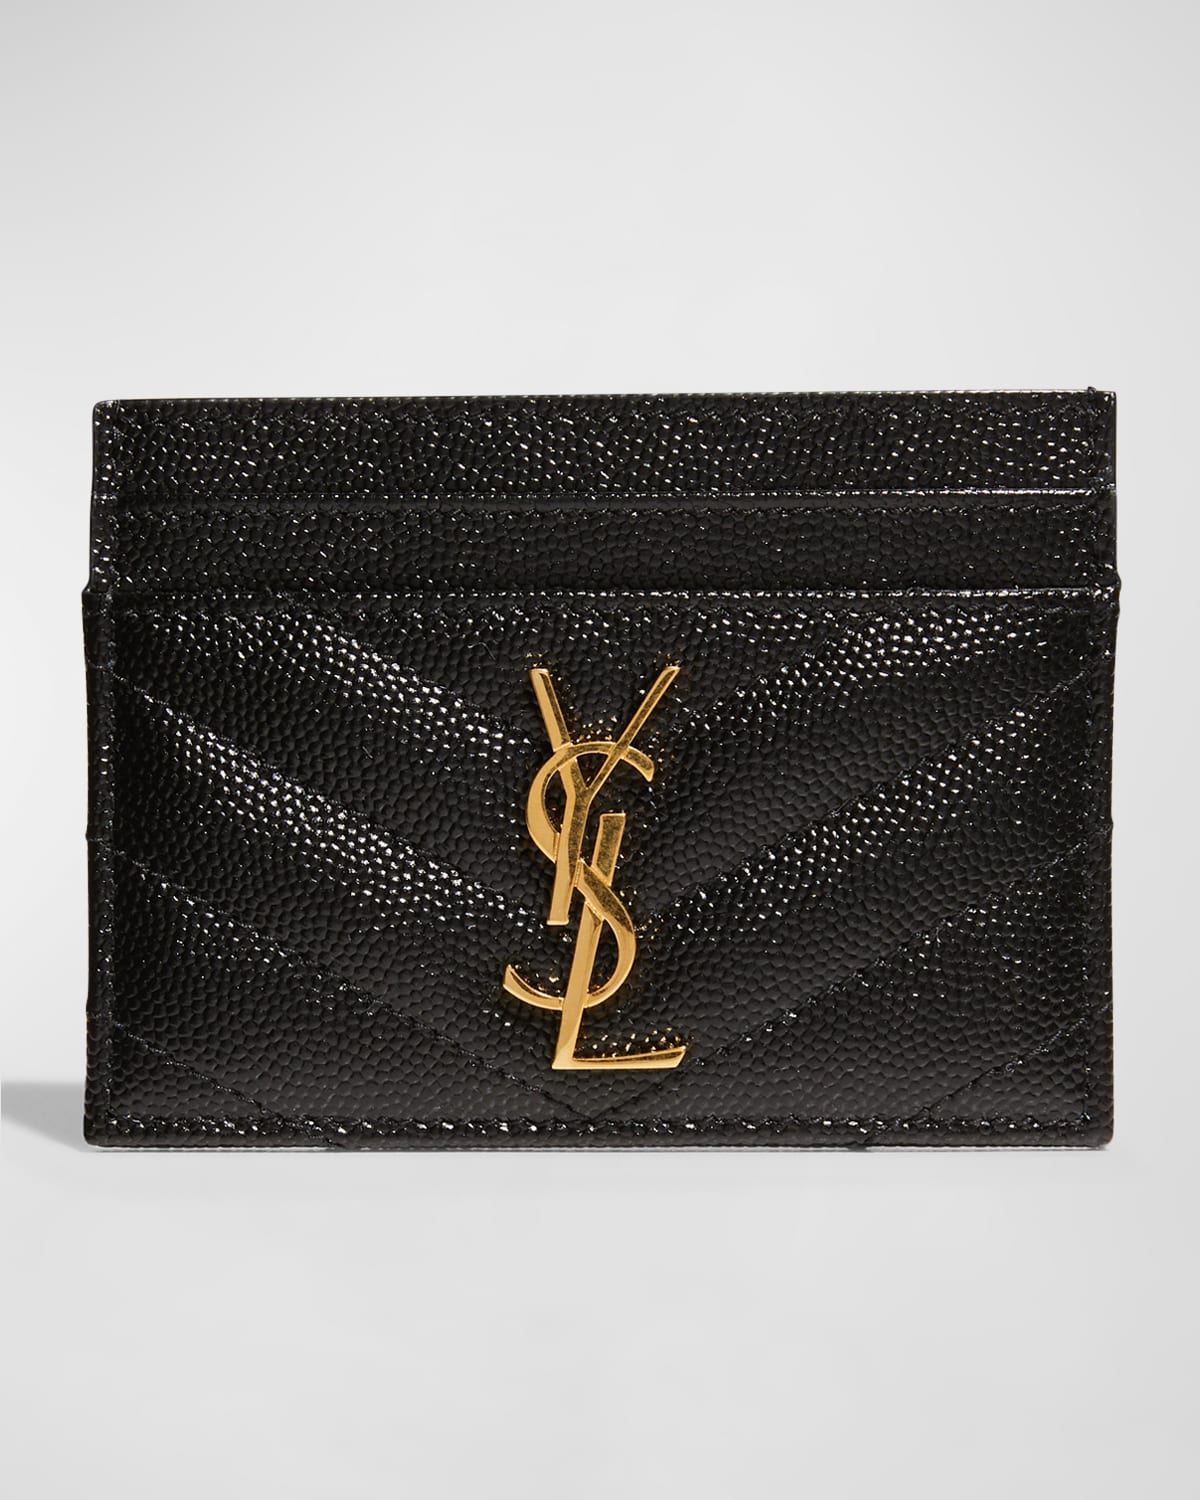 YSL Grain de Poudre Leather Card Case, Golden Hardware